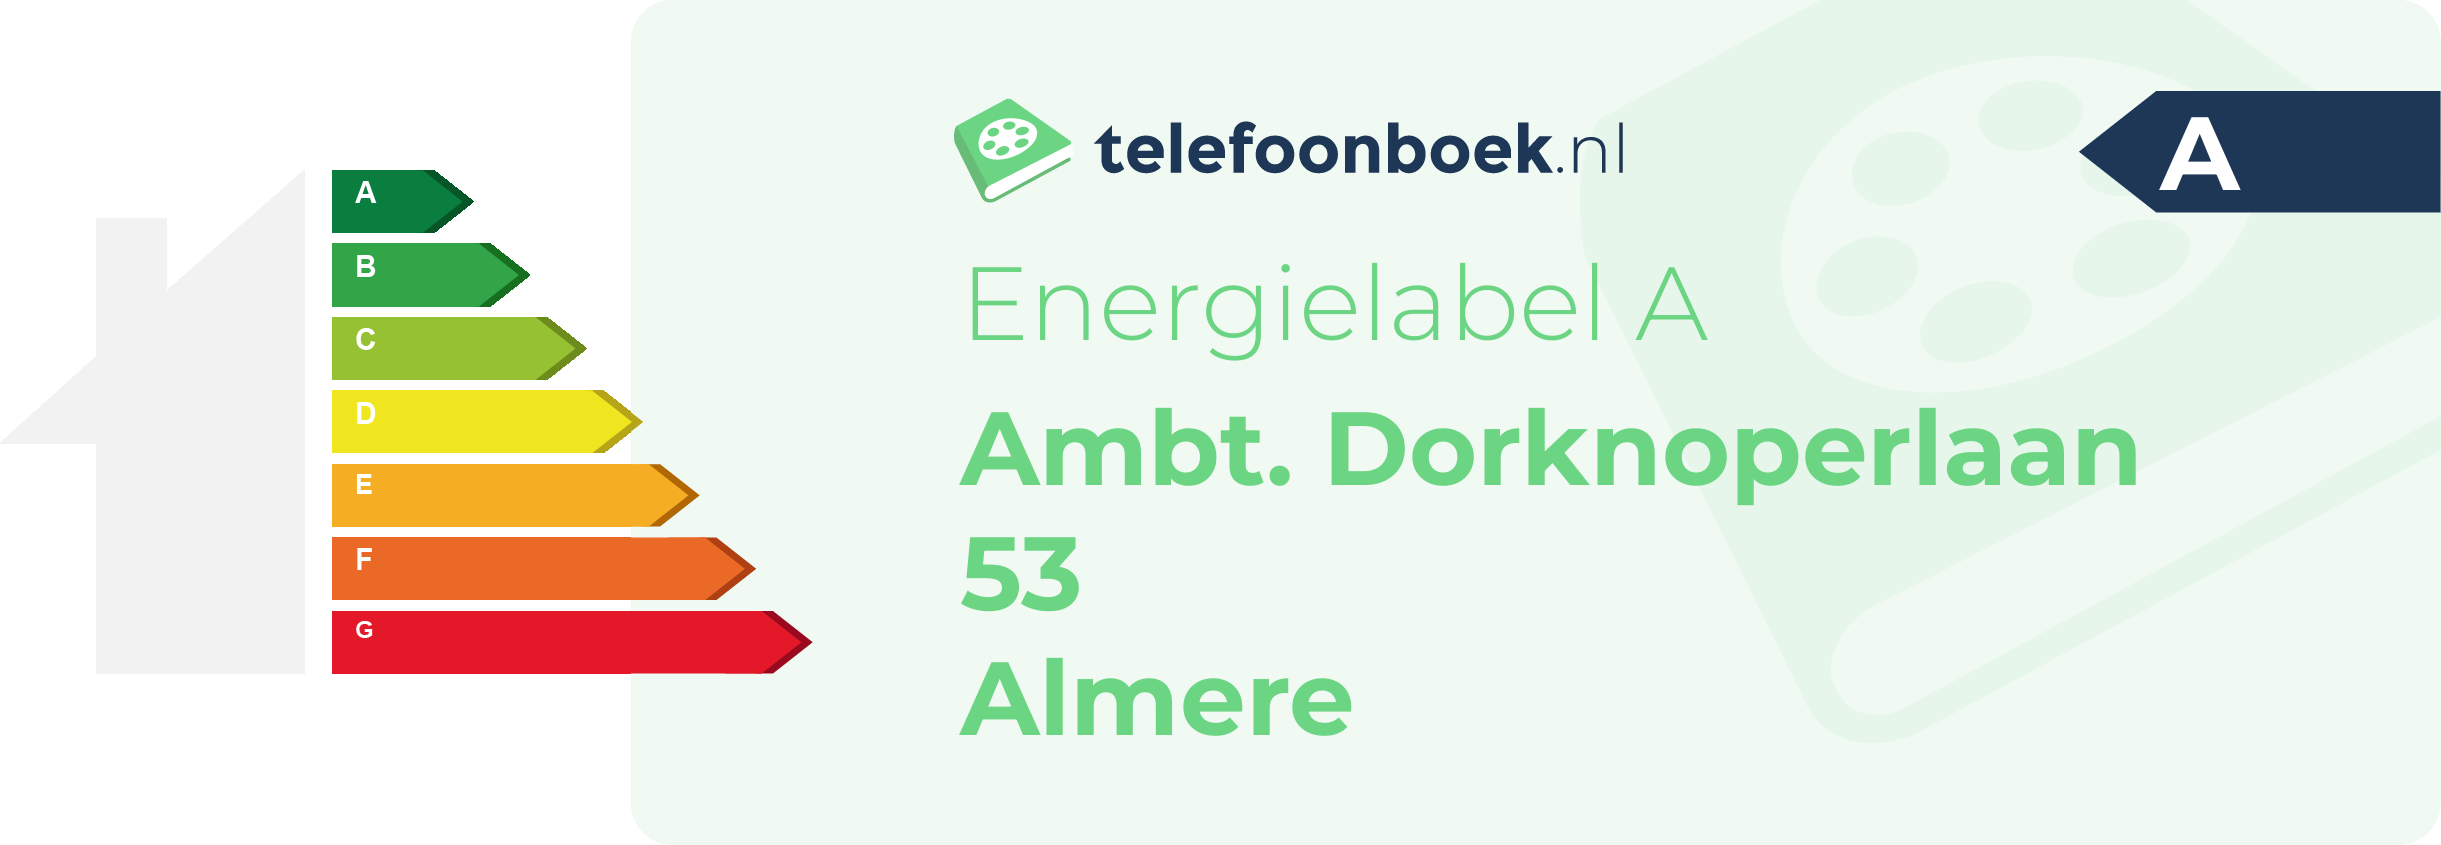 Energielabel Ambt. Dorknoperlaan 53 Almere